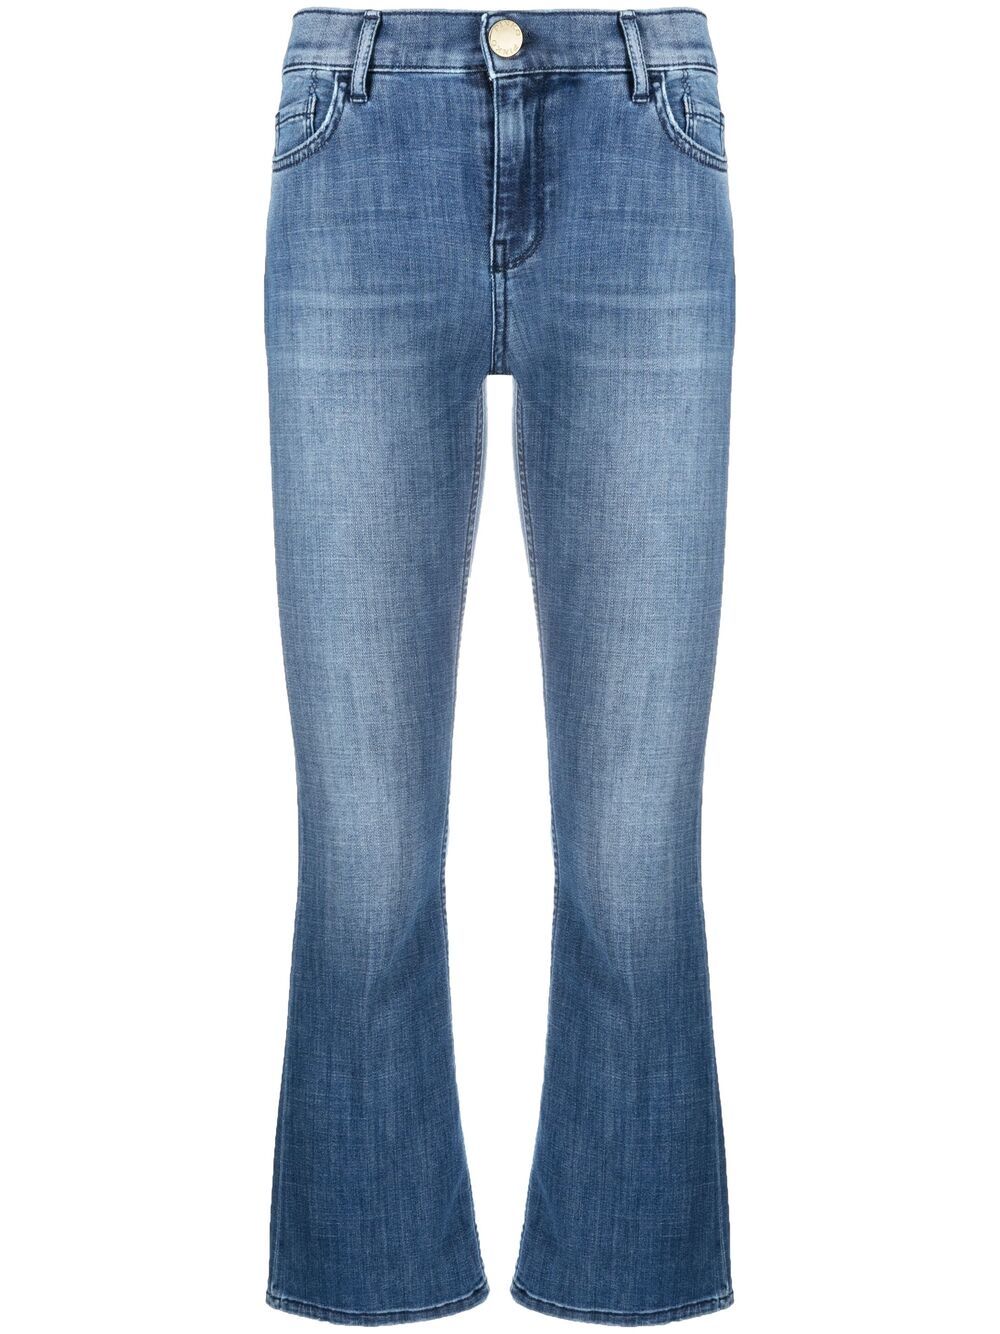 фото Pinko укороченные расклешенные джинсы fannie